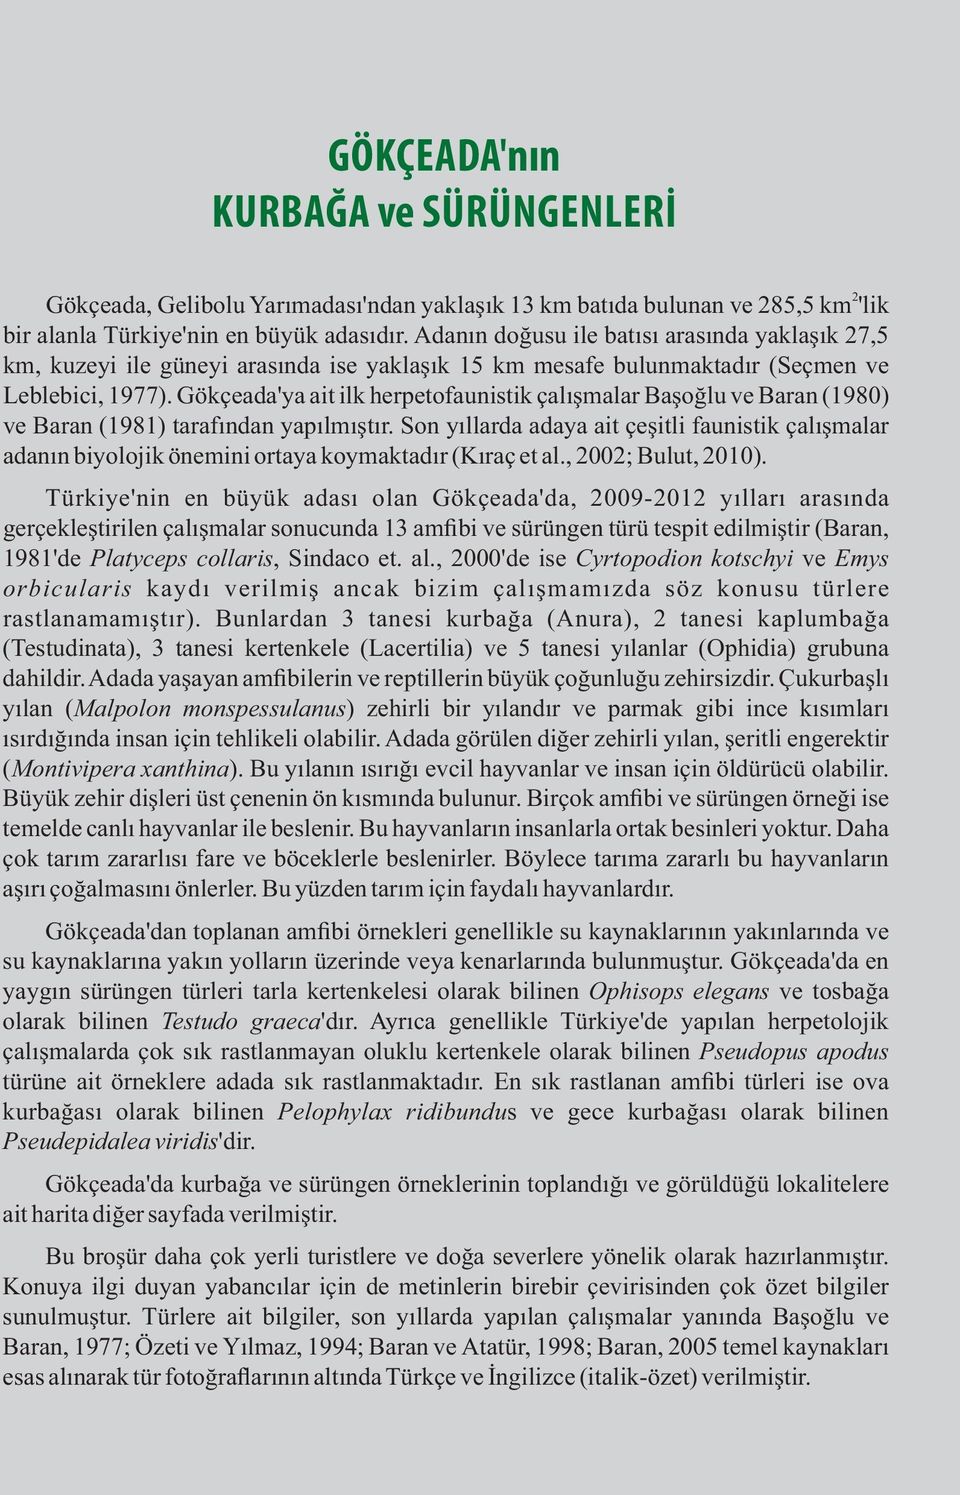 Gökçeada'ya ait ilk herpetofaunistik çalışmalar Başoğlu ve Baran (1980) ve Baran (1981) tarafından yapılmıştır.